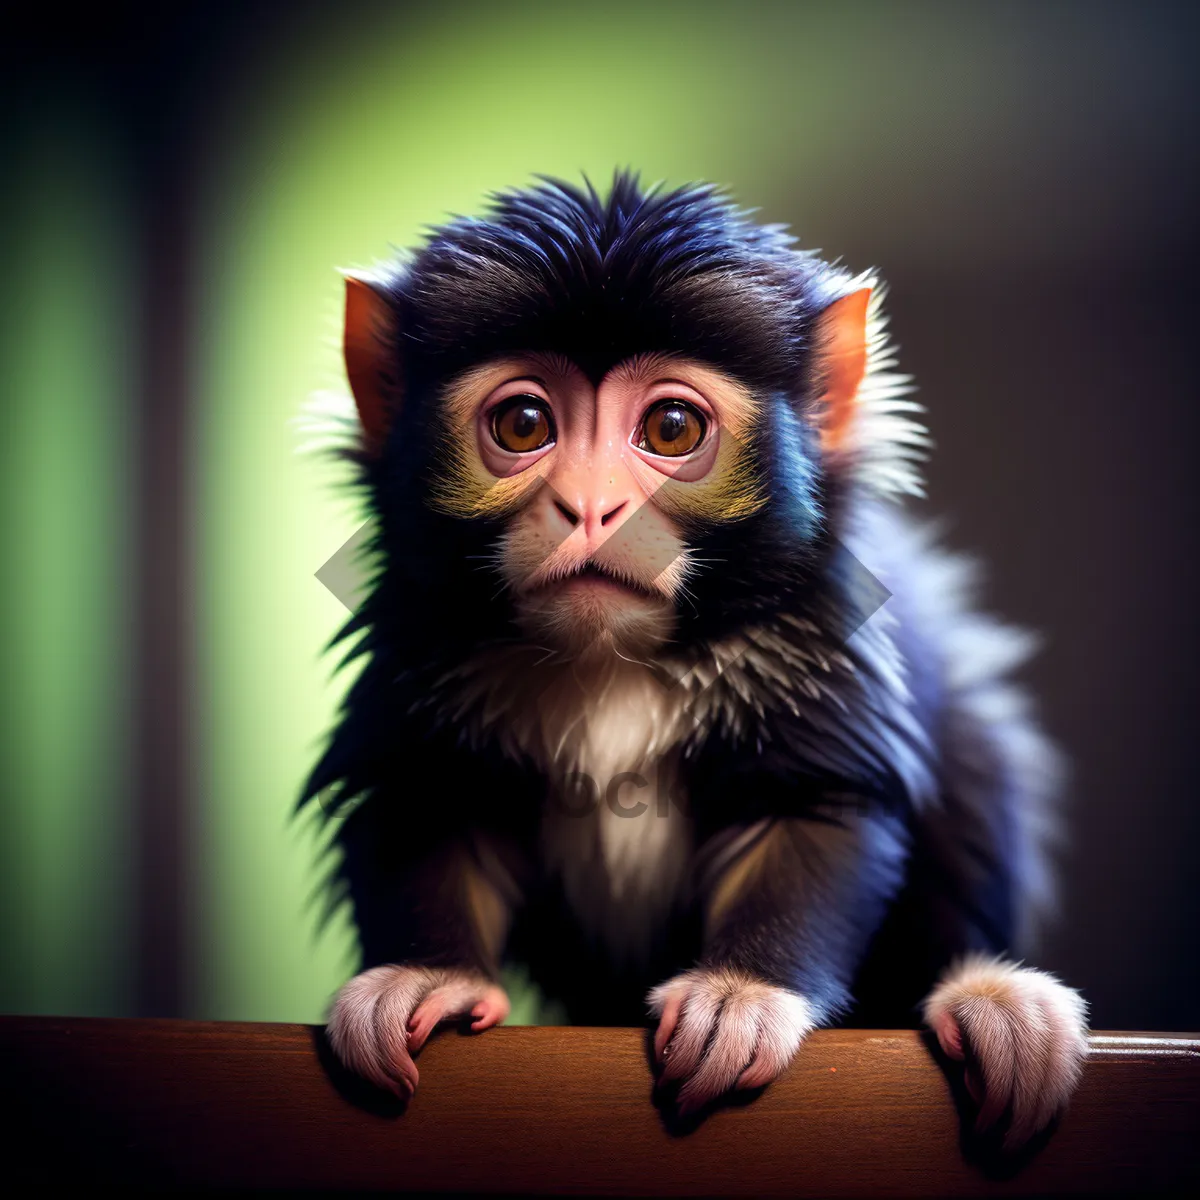 Picture of Primate Jungle Portrait